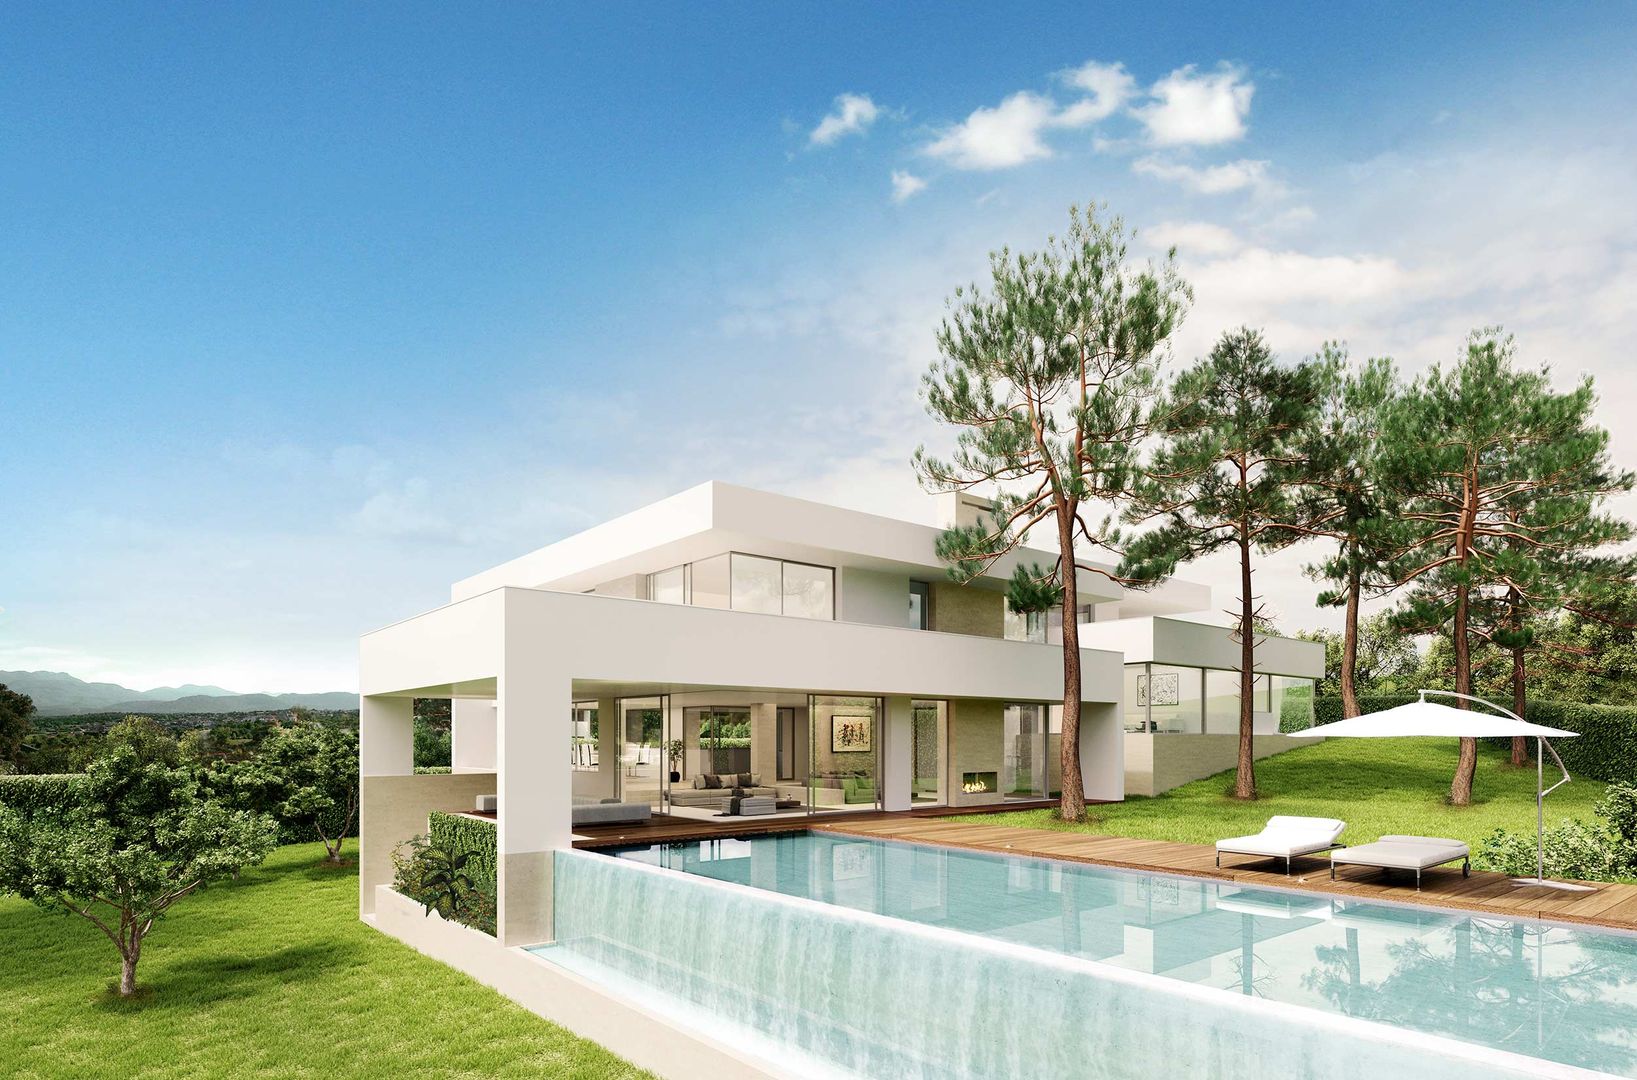 Jardín y piscina Otto Medem Arquitecto vanguardista en Madrid Casas unifamiliares